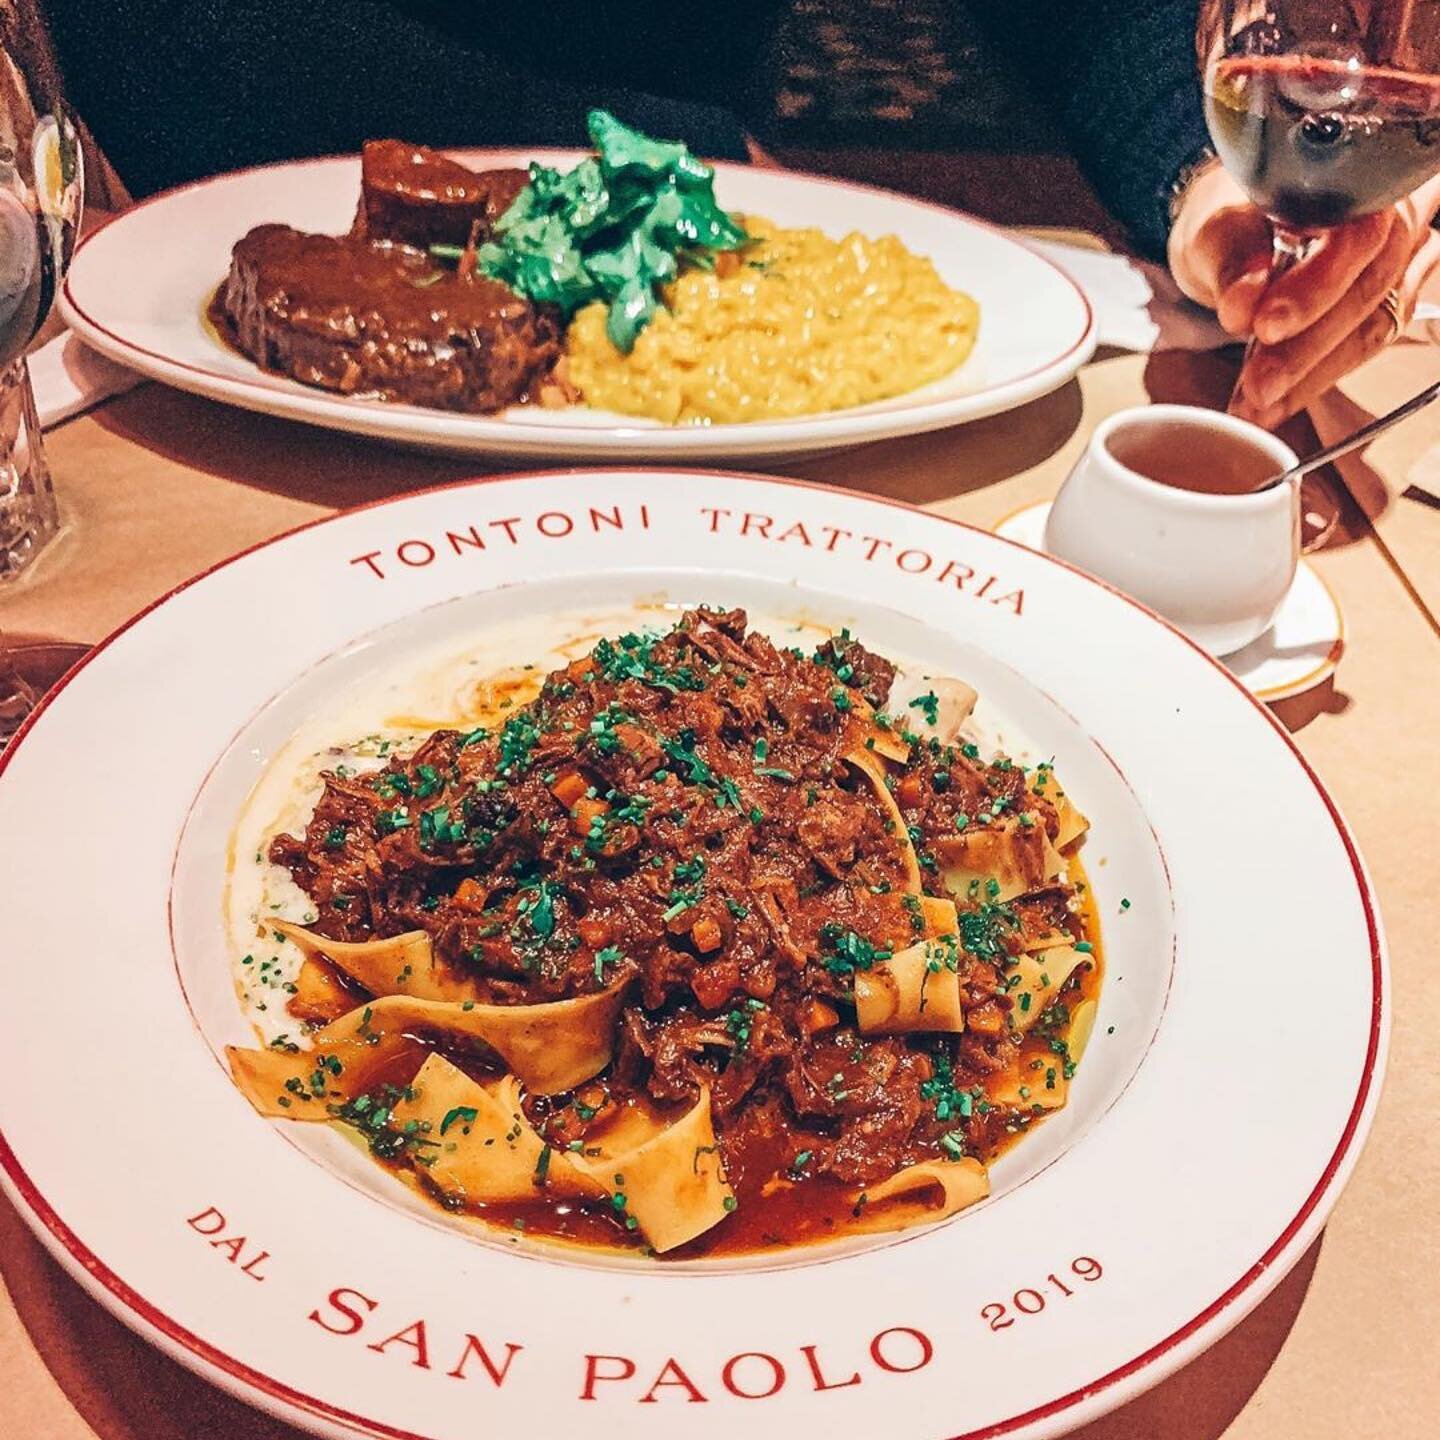 Adoramos a visita e feedback do @megustagourmet  #repost
・・・
ÓTIMA TRATTORIA ITALIANA @tontoni.sp 🍝
.
O chef @gustavorozzino responsável pela cozinha e também pelo premiado @tontonrestaurante trouxe para o menu do Tontoni aqueles pratos bem itali